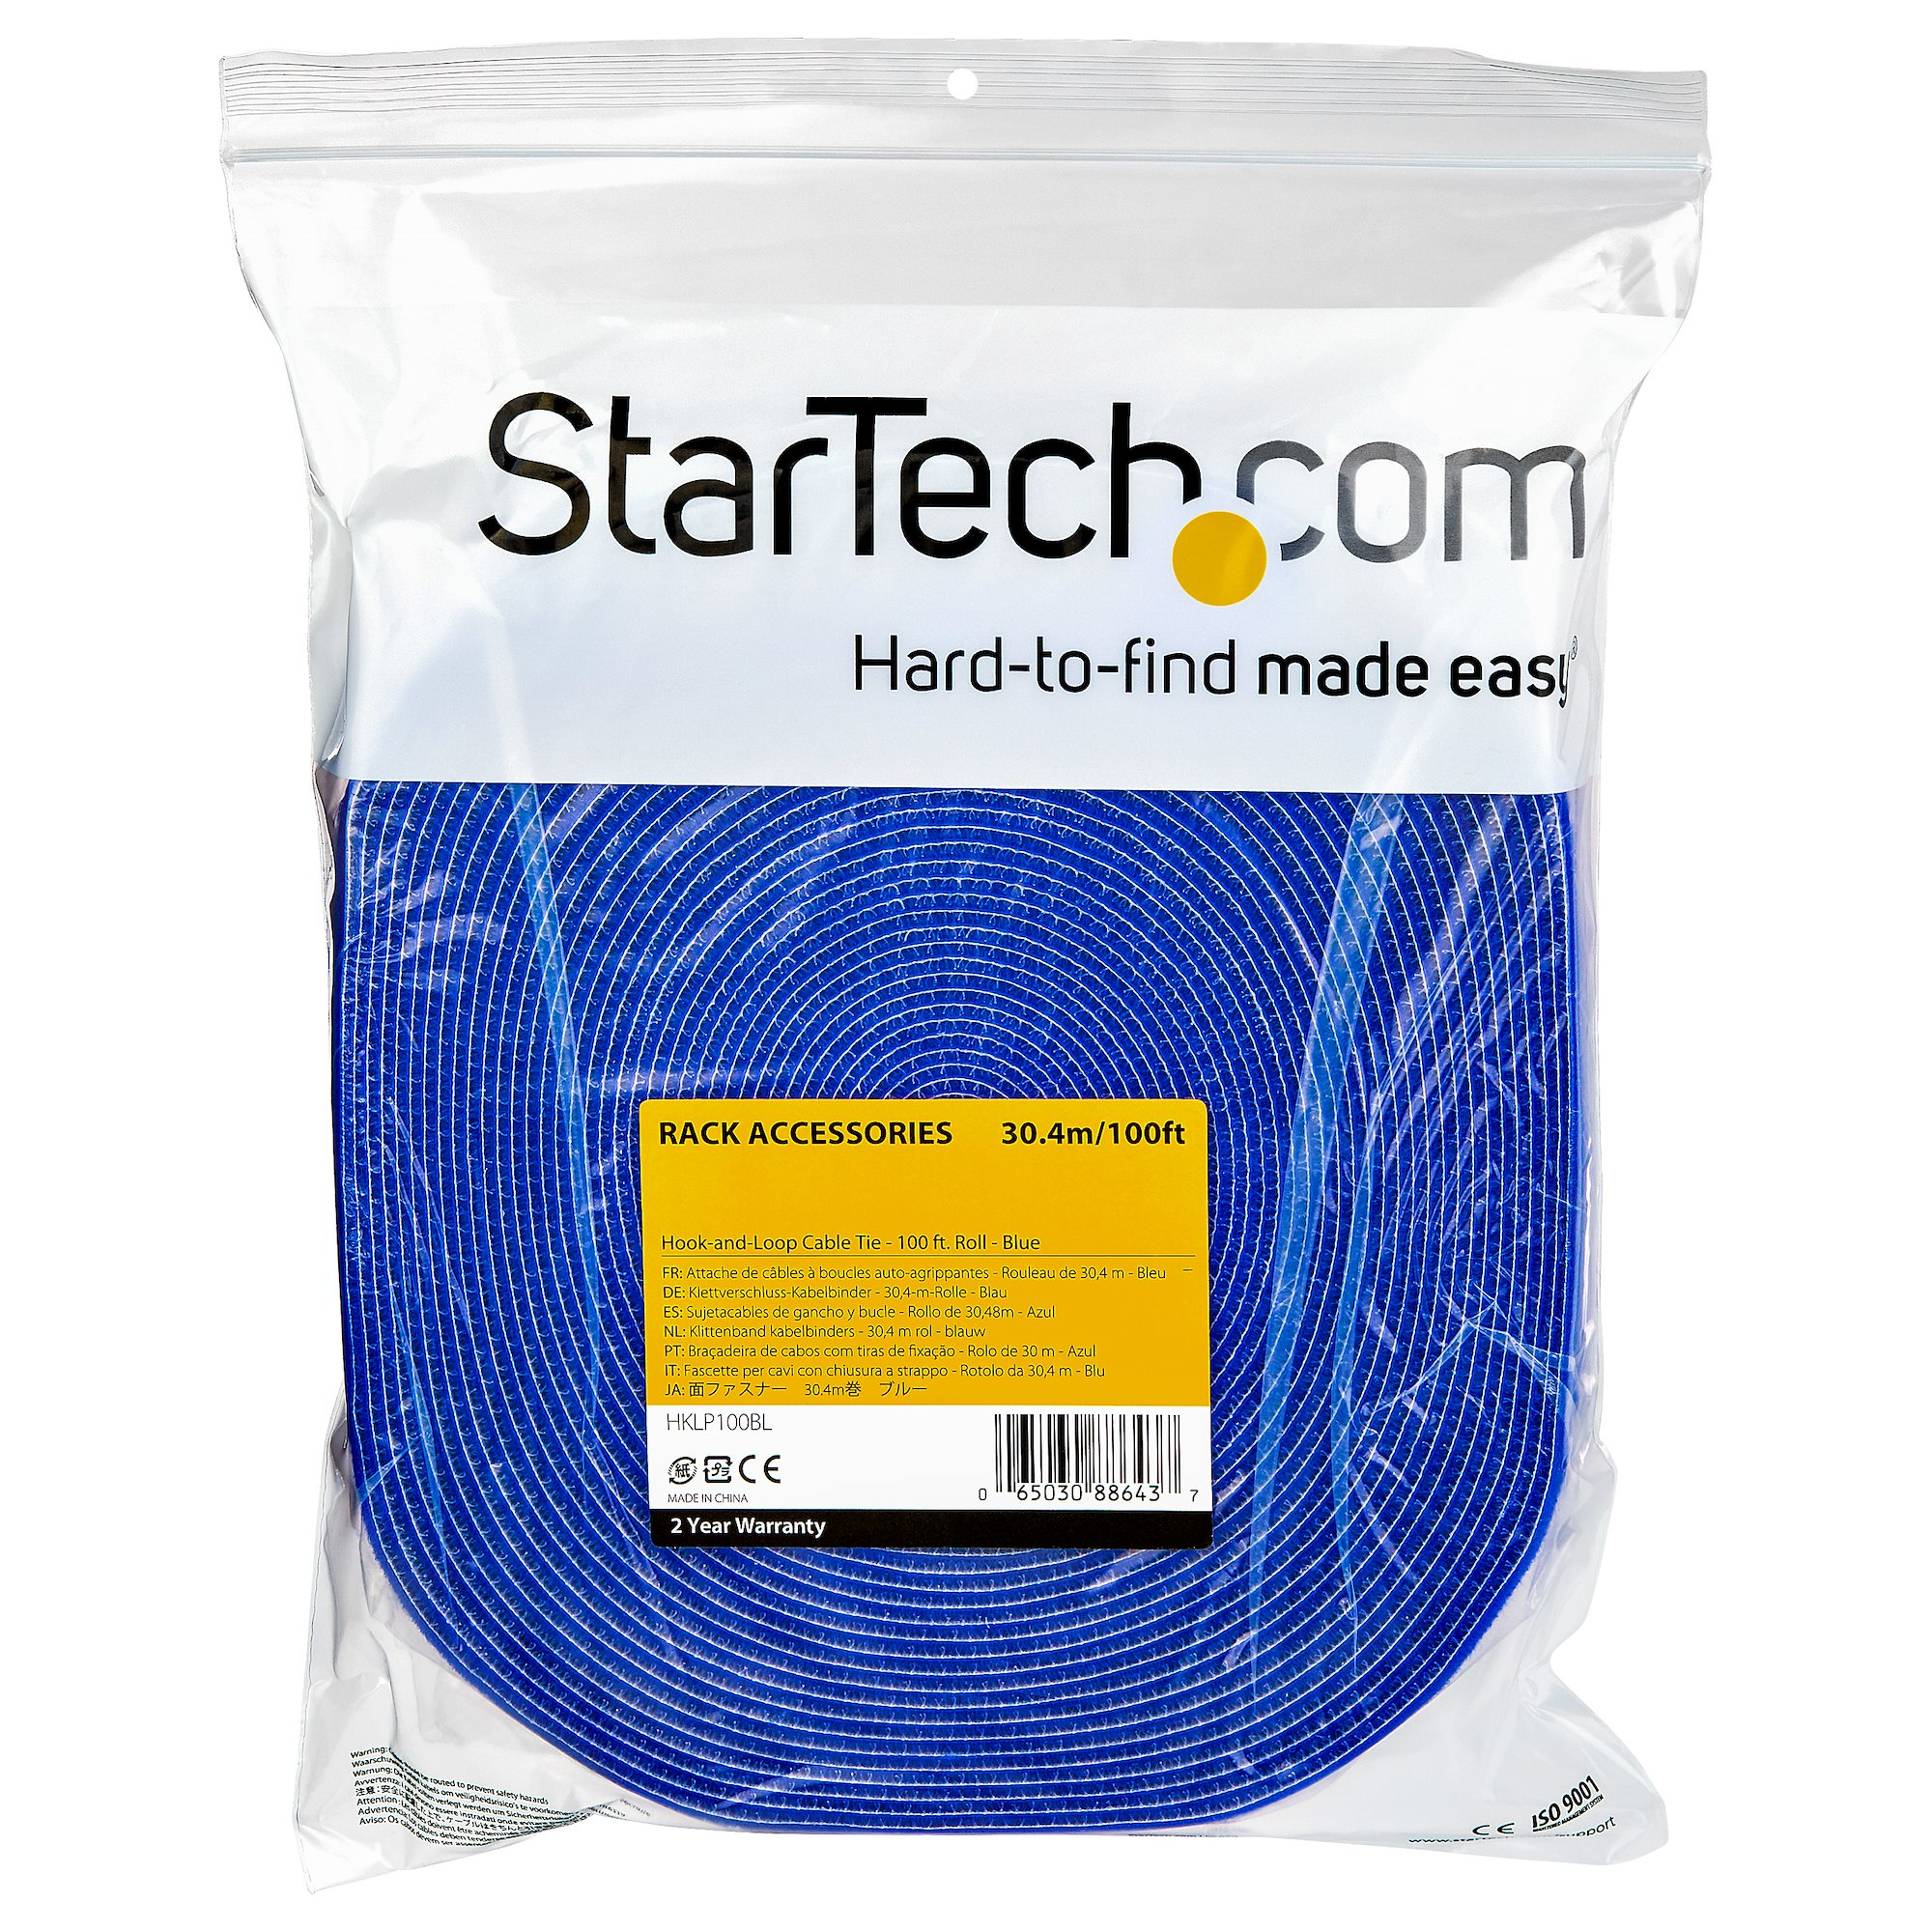 StarTech.com HKLP100BL Klettkabelbinder (30,4m, frei zuschneidbar & wiederverwendbar)